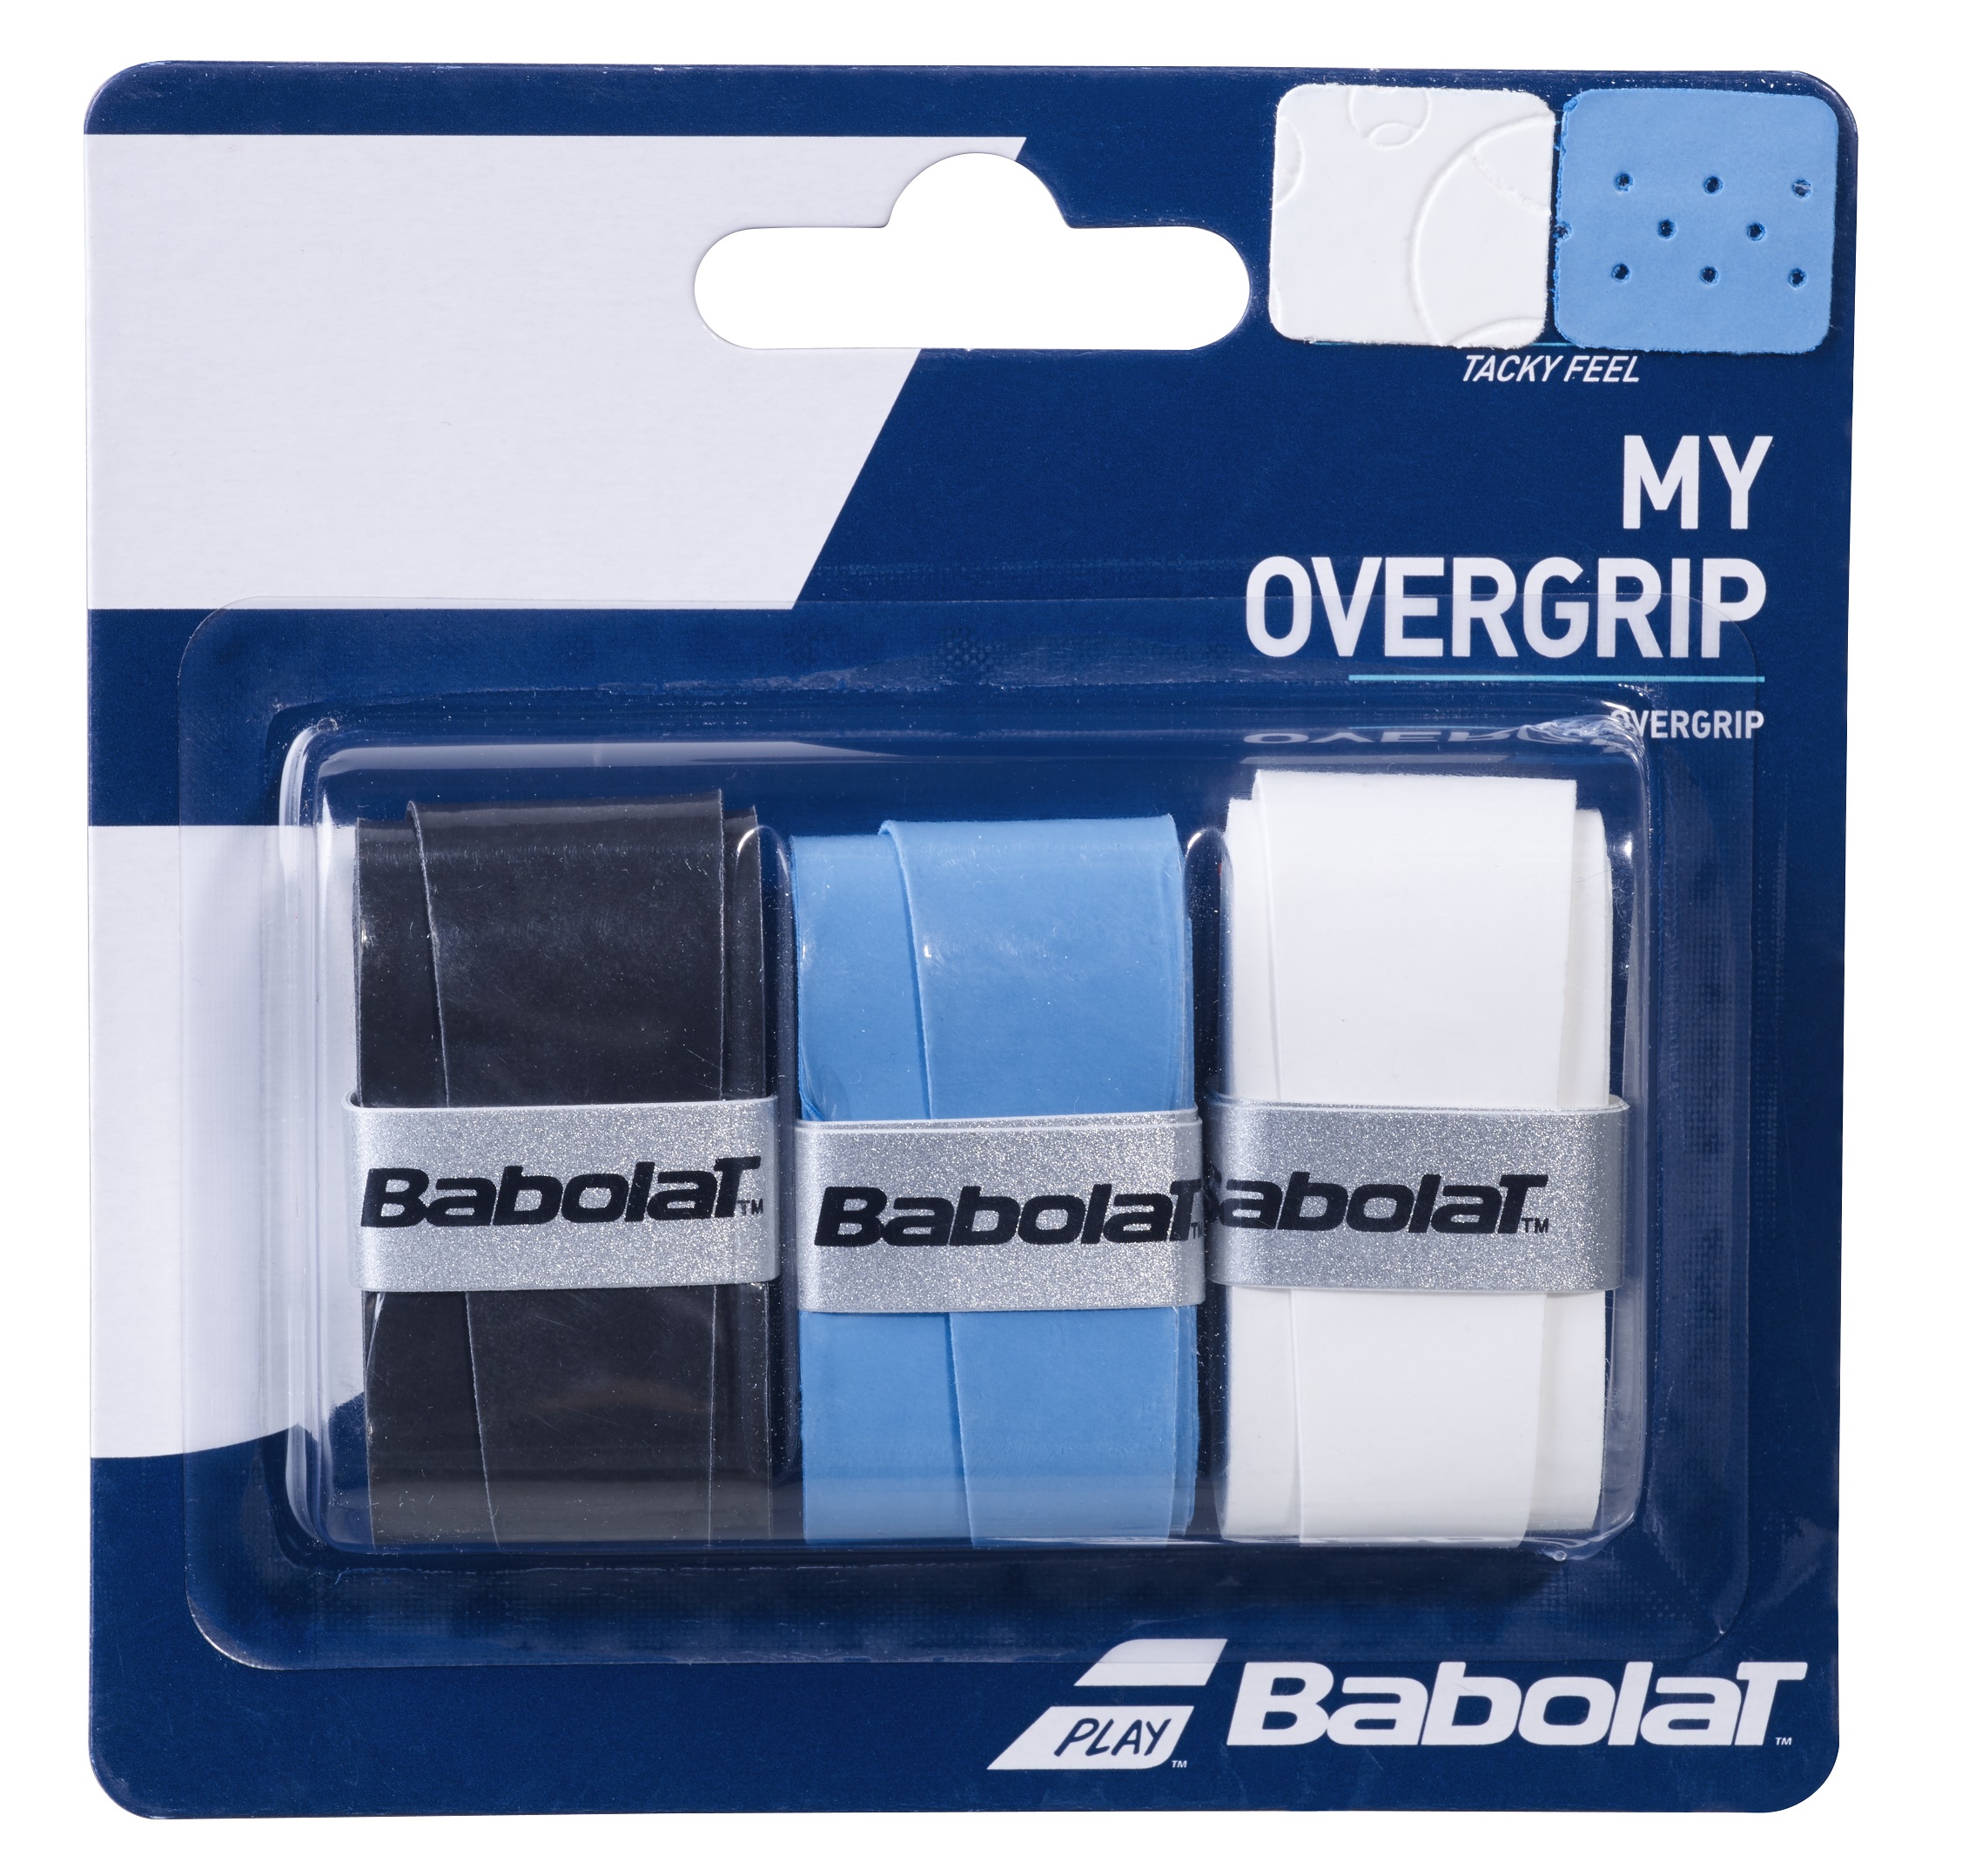 אוברגריפ (Overgrip) בבולט My Overgrip X3 Babolat